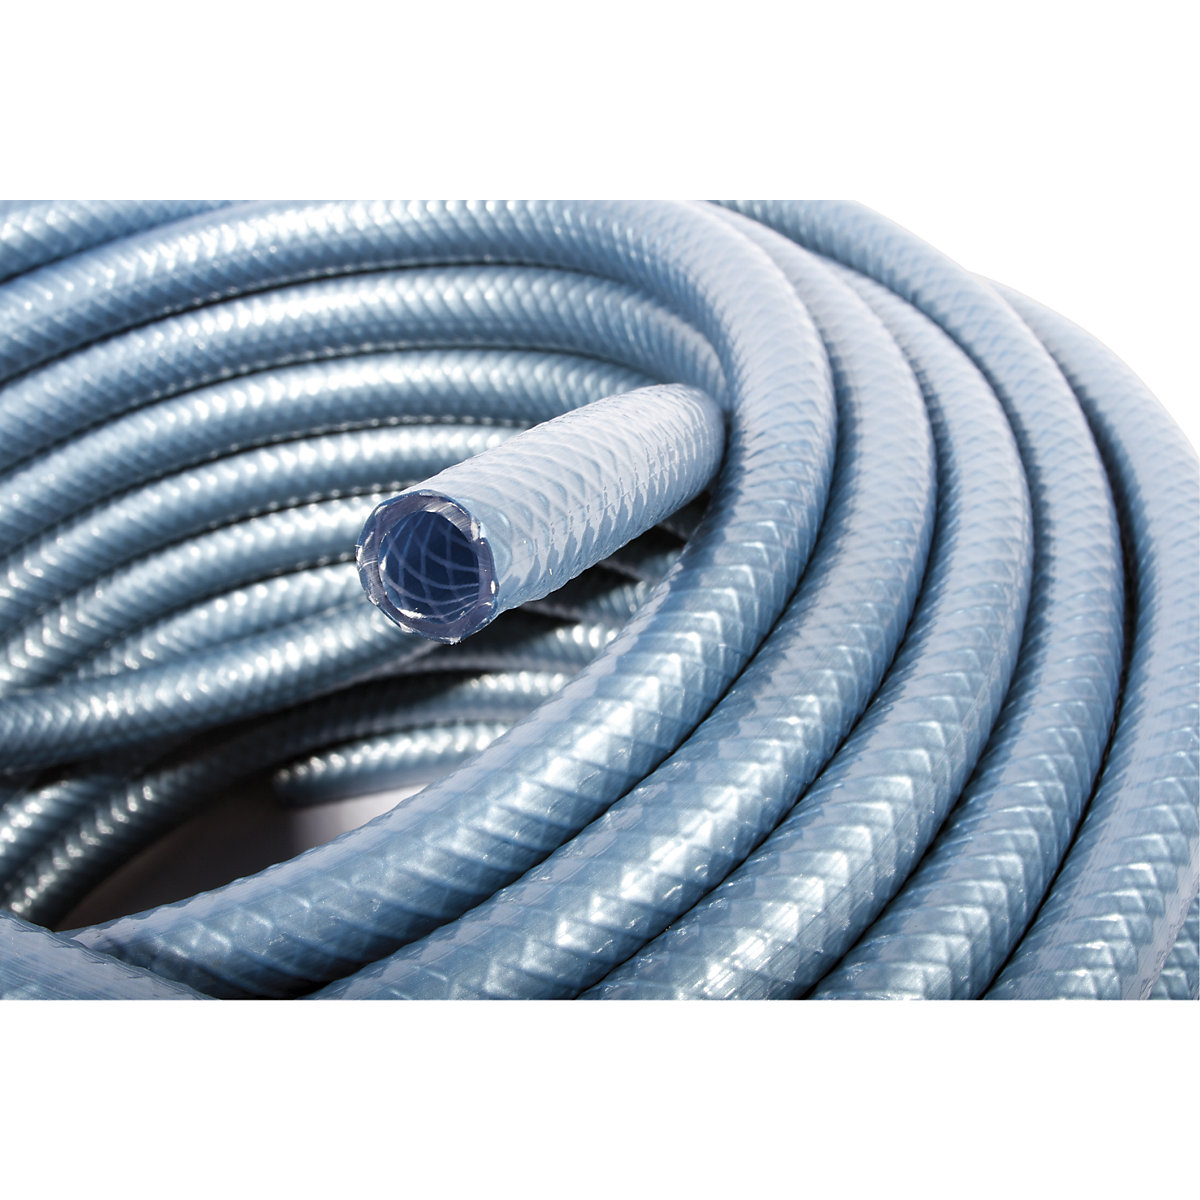 Compressed air hose made of PVC - COBA